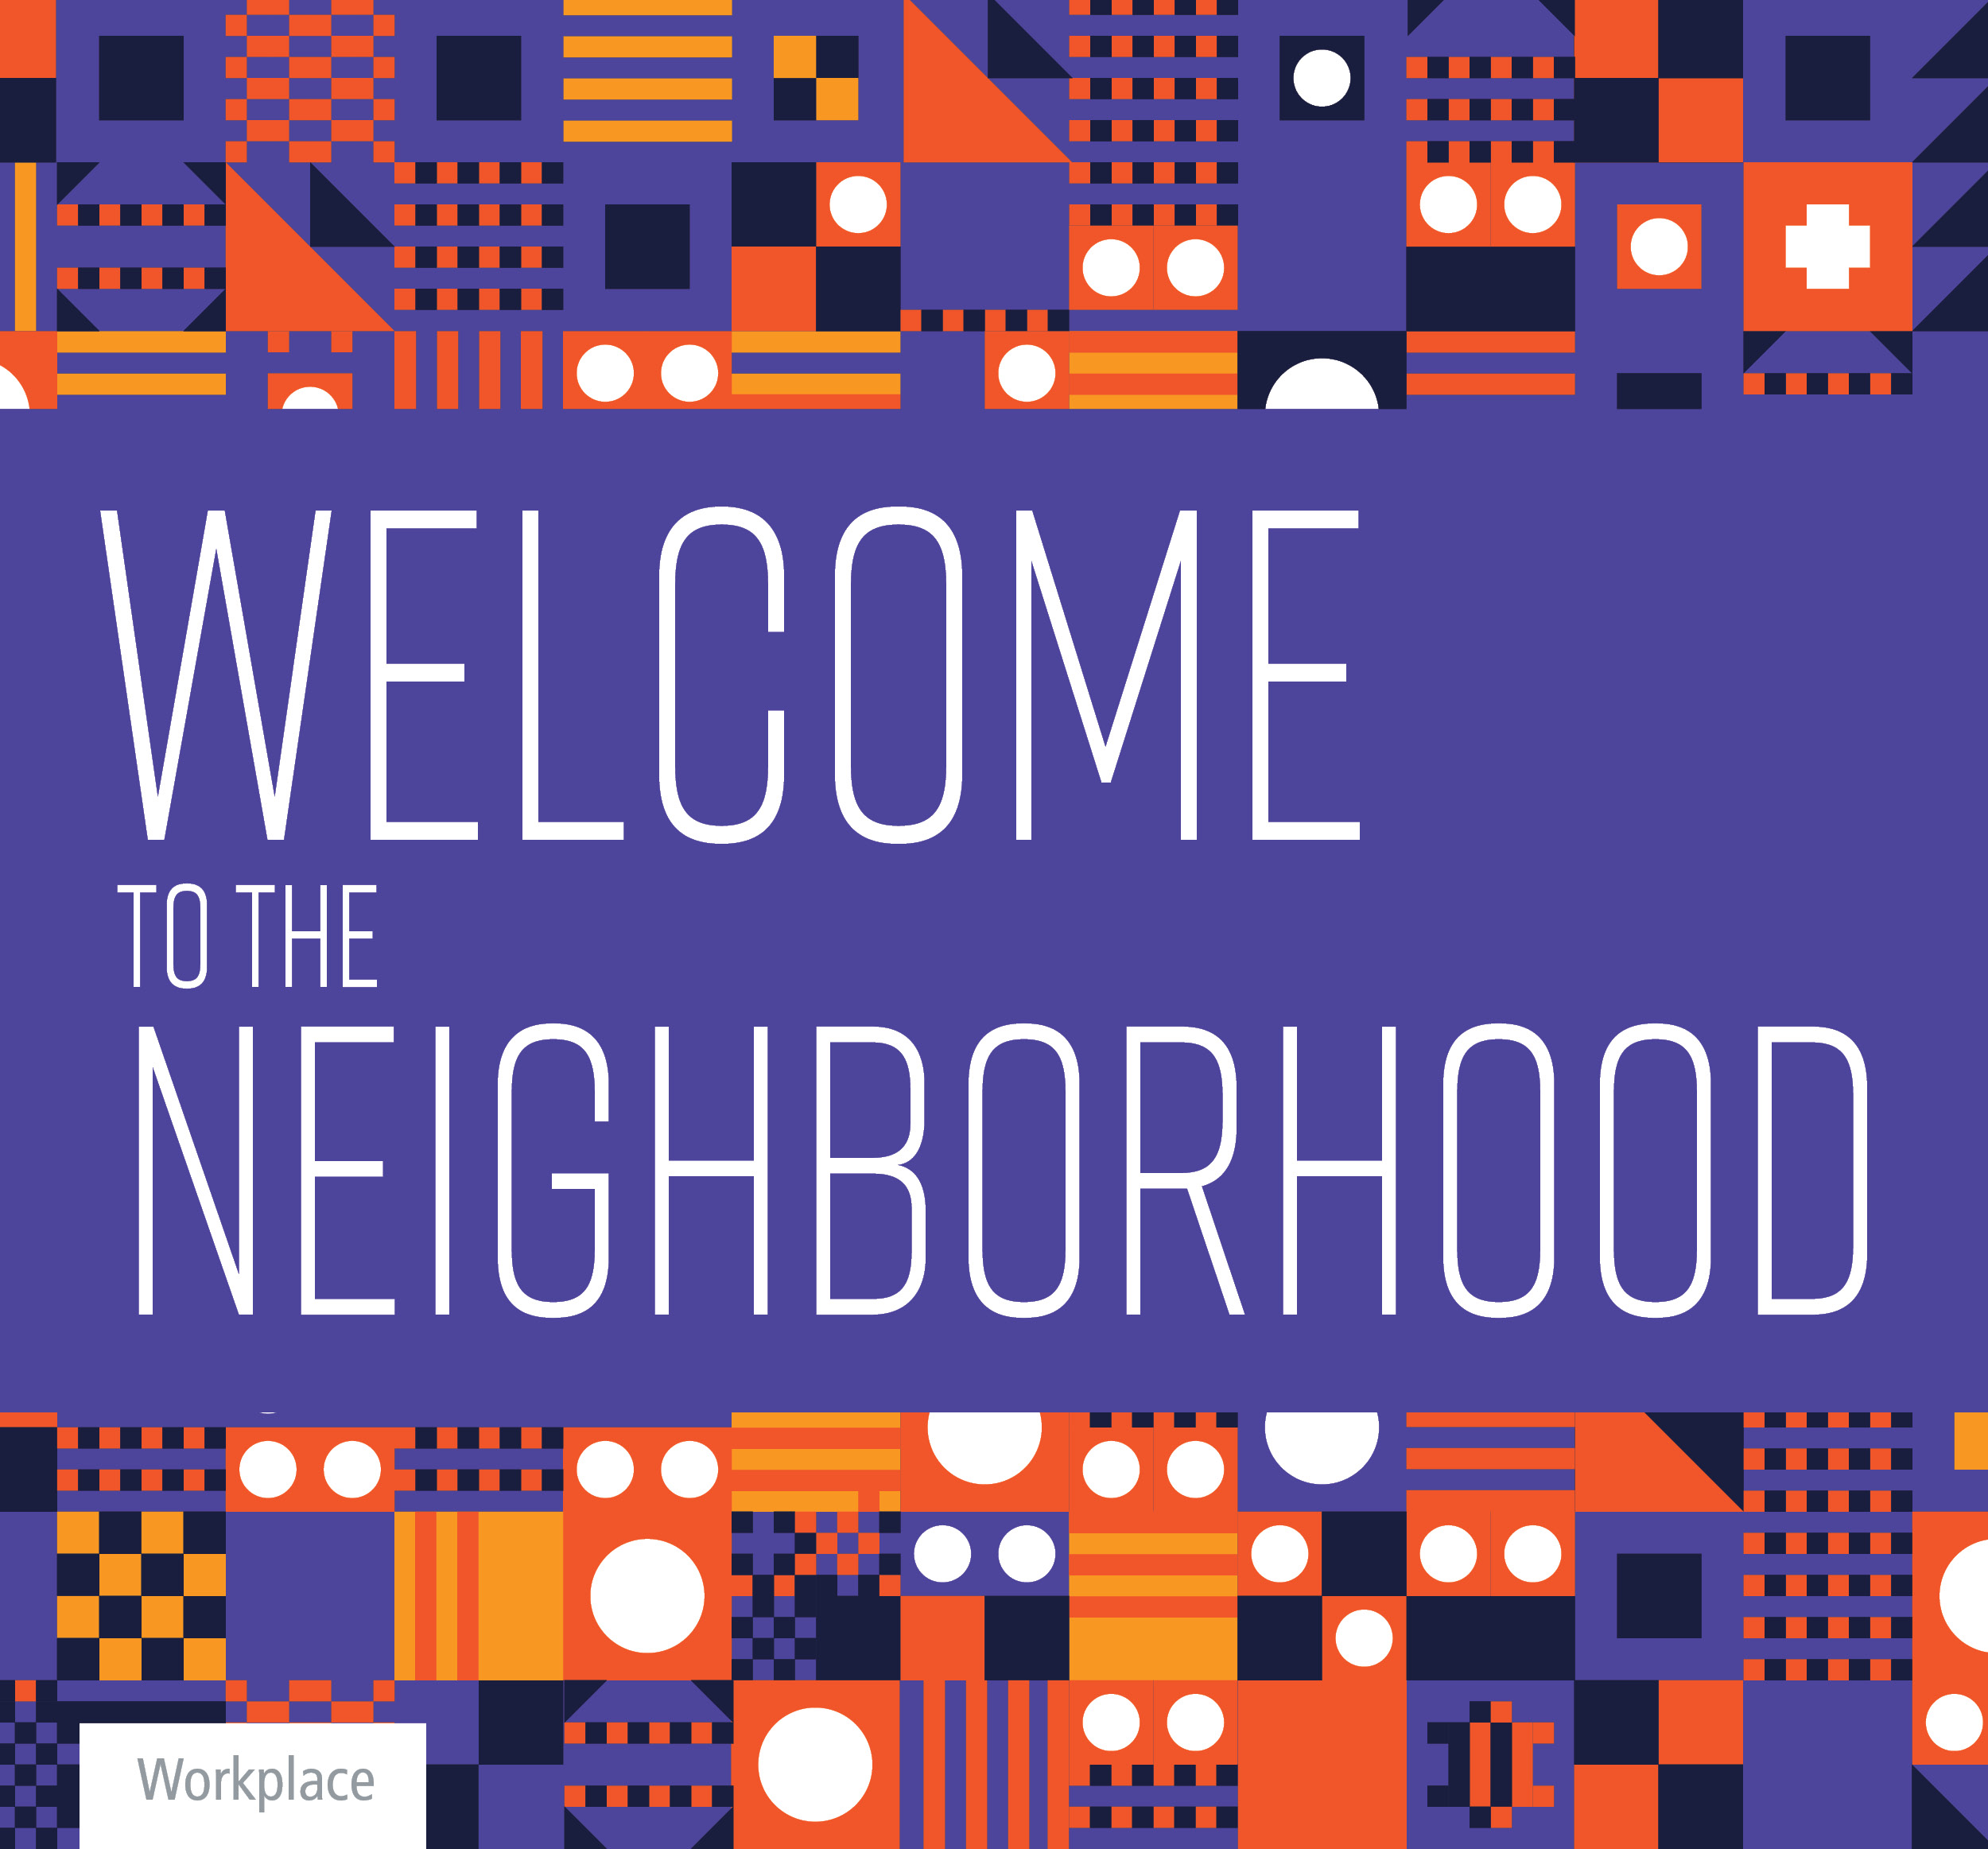 Welcome to the Neighborhood-1